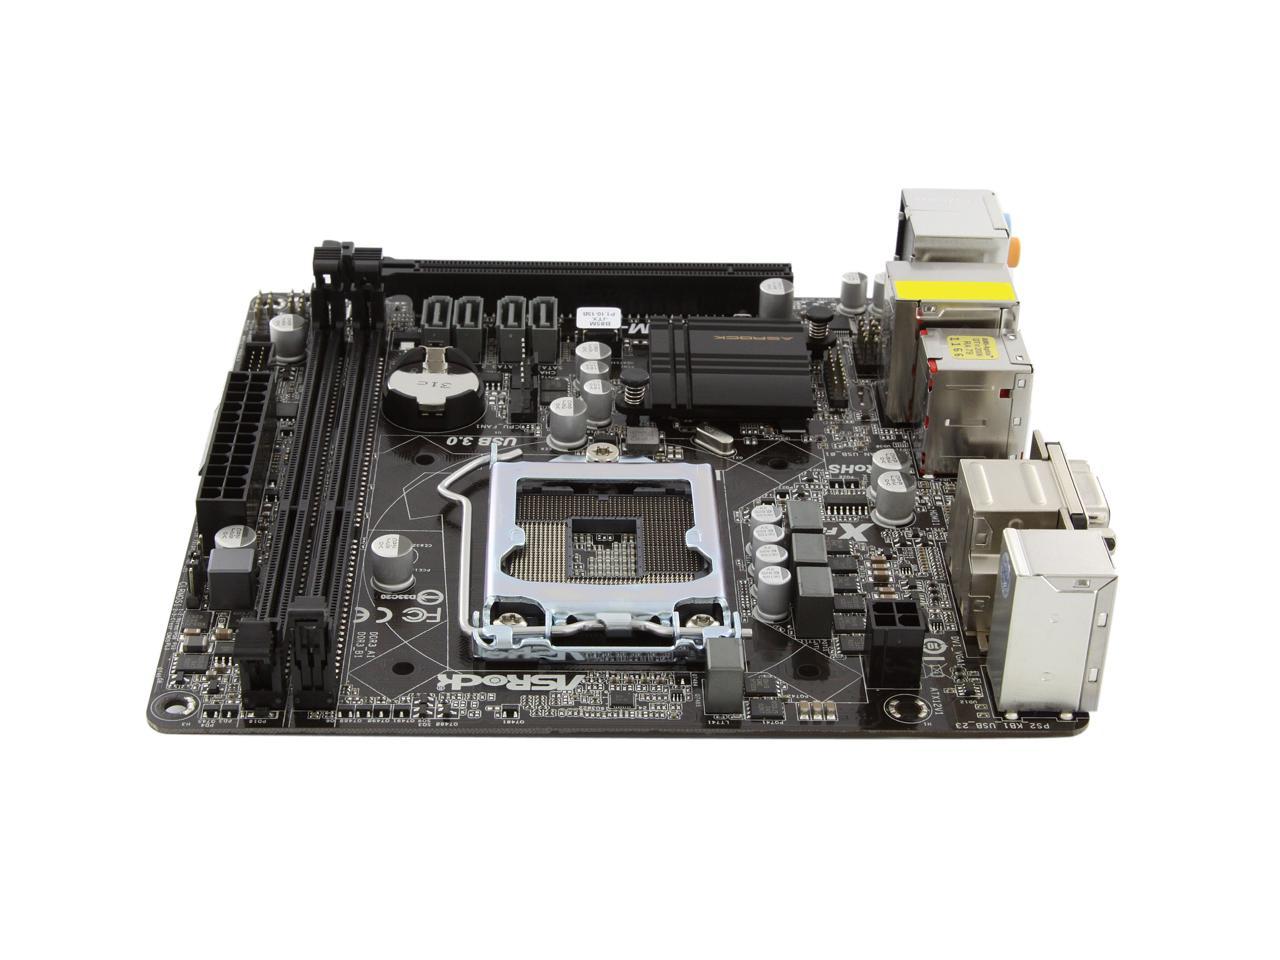 ASRock B85M-ITX LGA 1150 Intel B85 HDMI SATA 6Gb/s USB 3.0 Mini ITX Intel  Motherboard